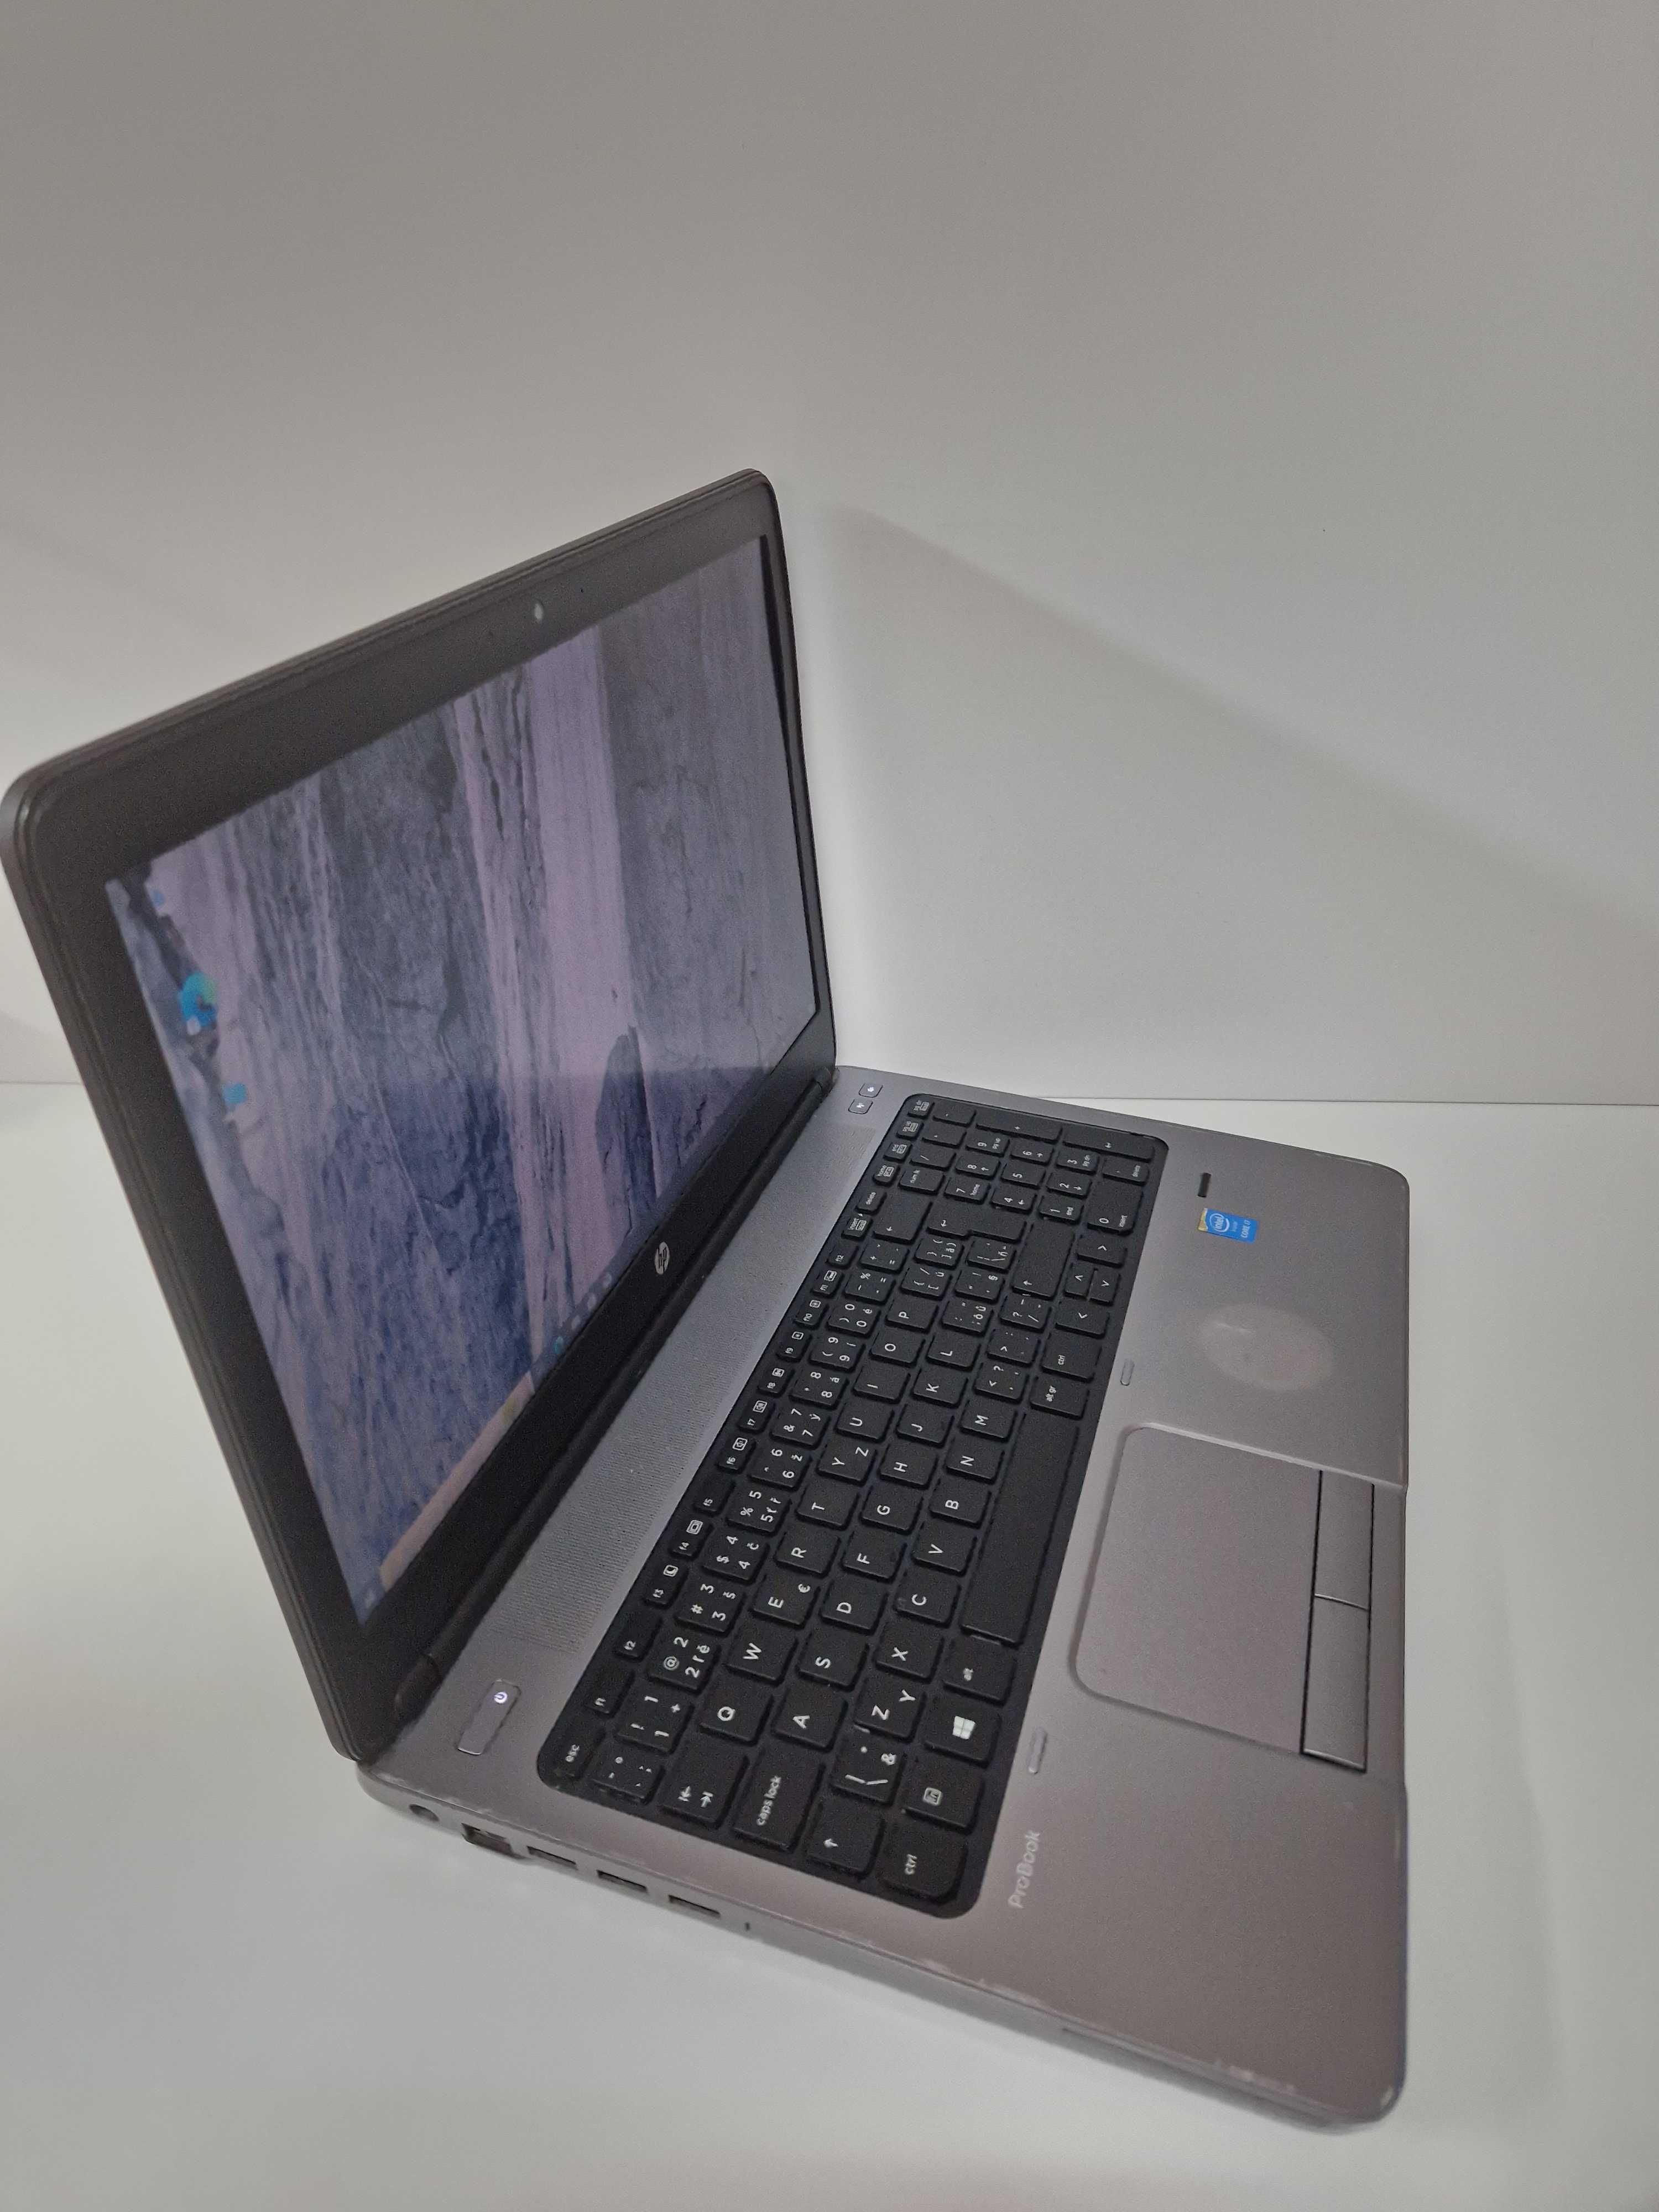 Laptop Hp 650 G1 i7-4712MQ Ram 8GB 240gb SSD 15,6 hdmi fullHD